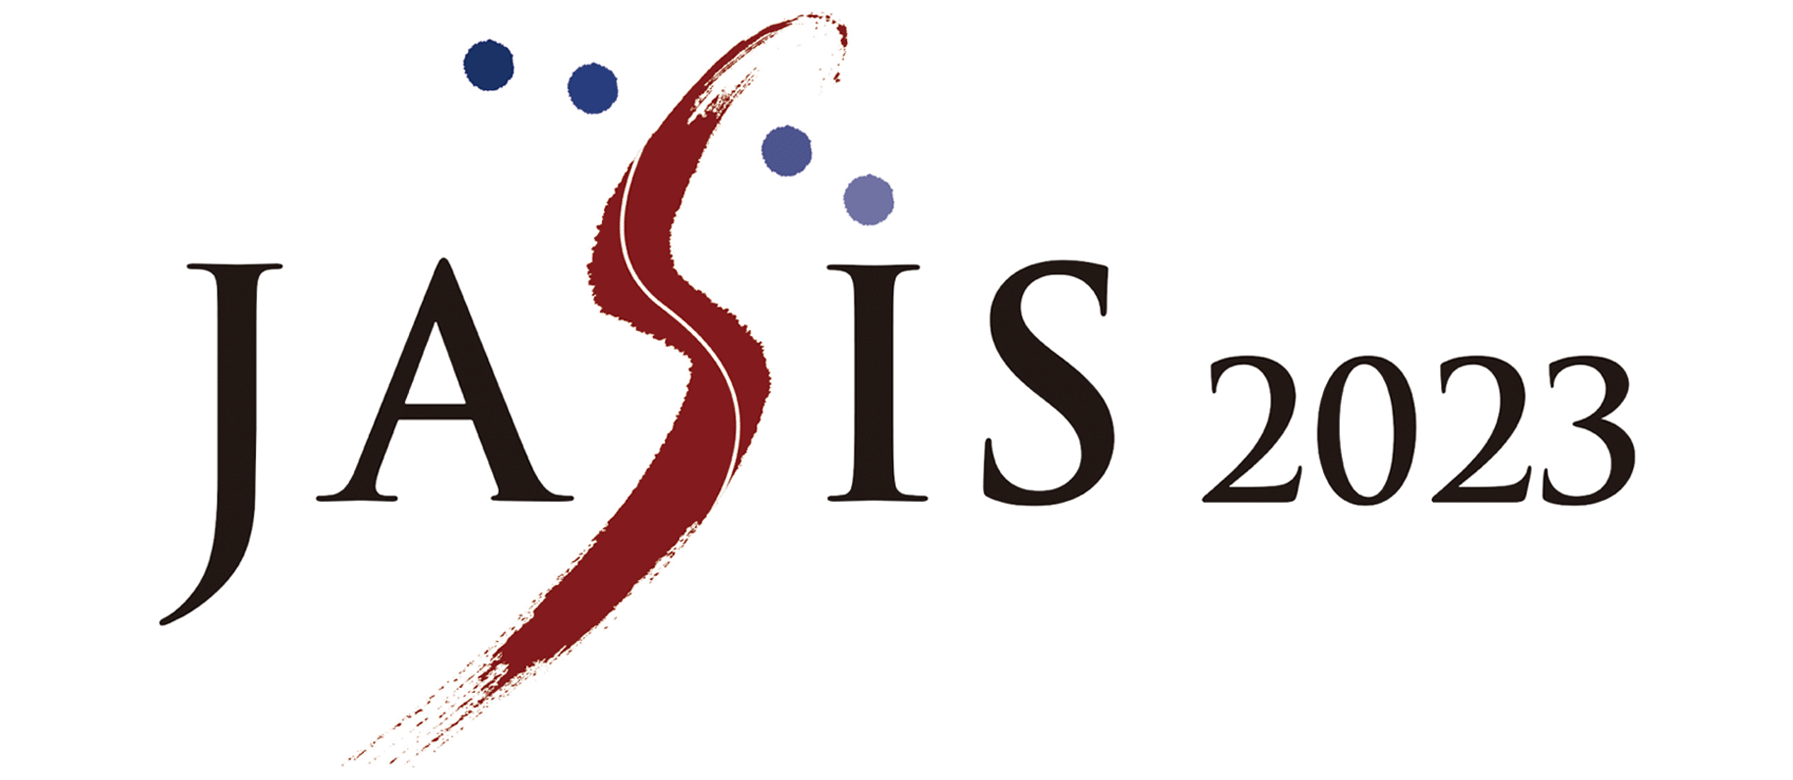 JASIS Logo